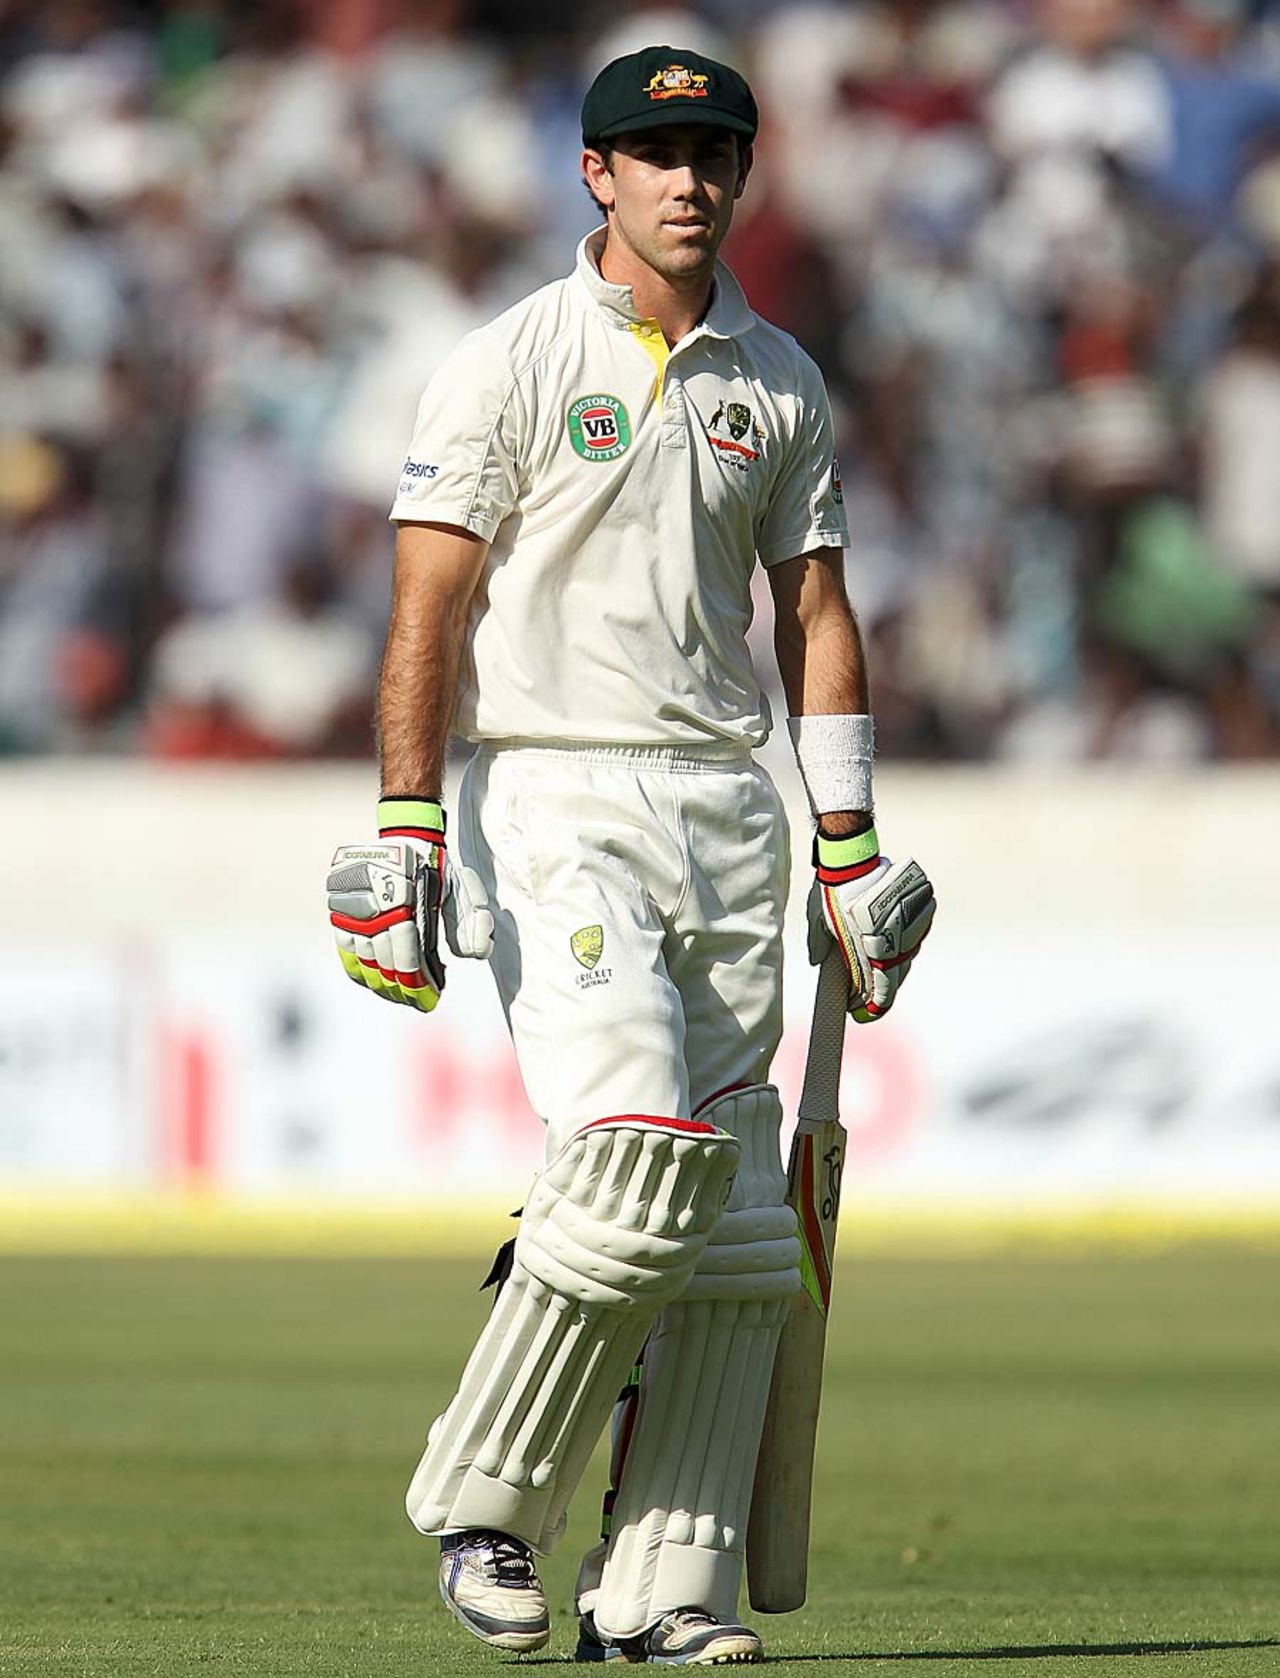 Debutant Glenn Maxwell walks back after being dismissed, India v Australia, 2nd Test, Hyderabad, March 2, 2013